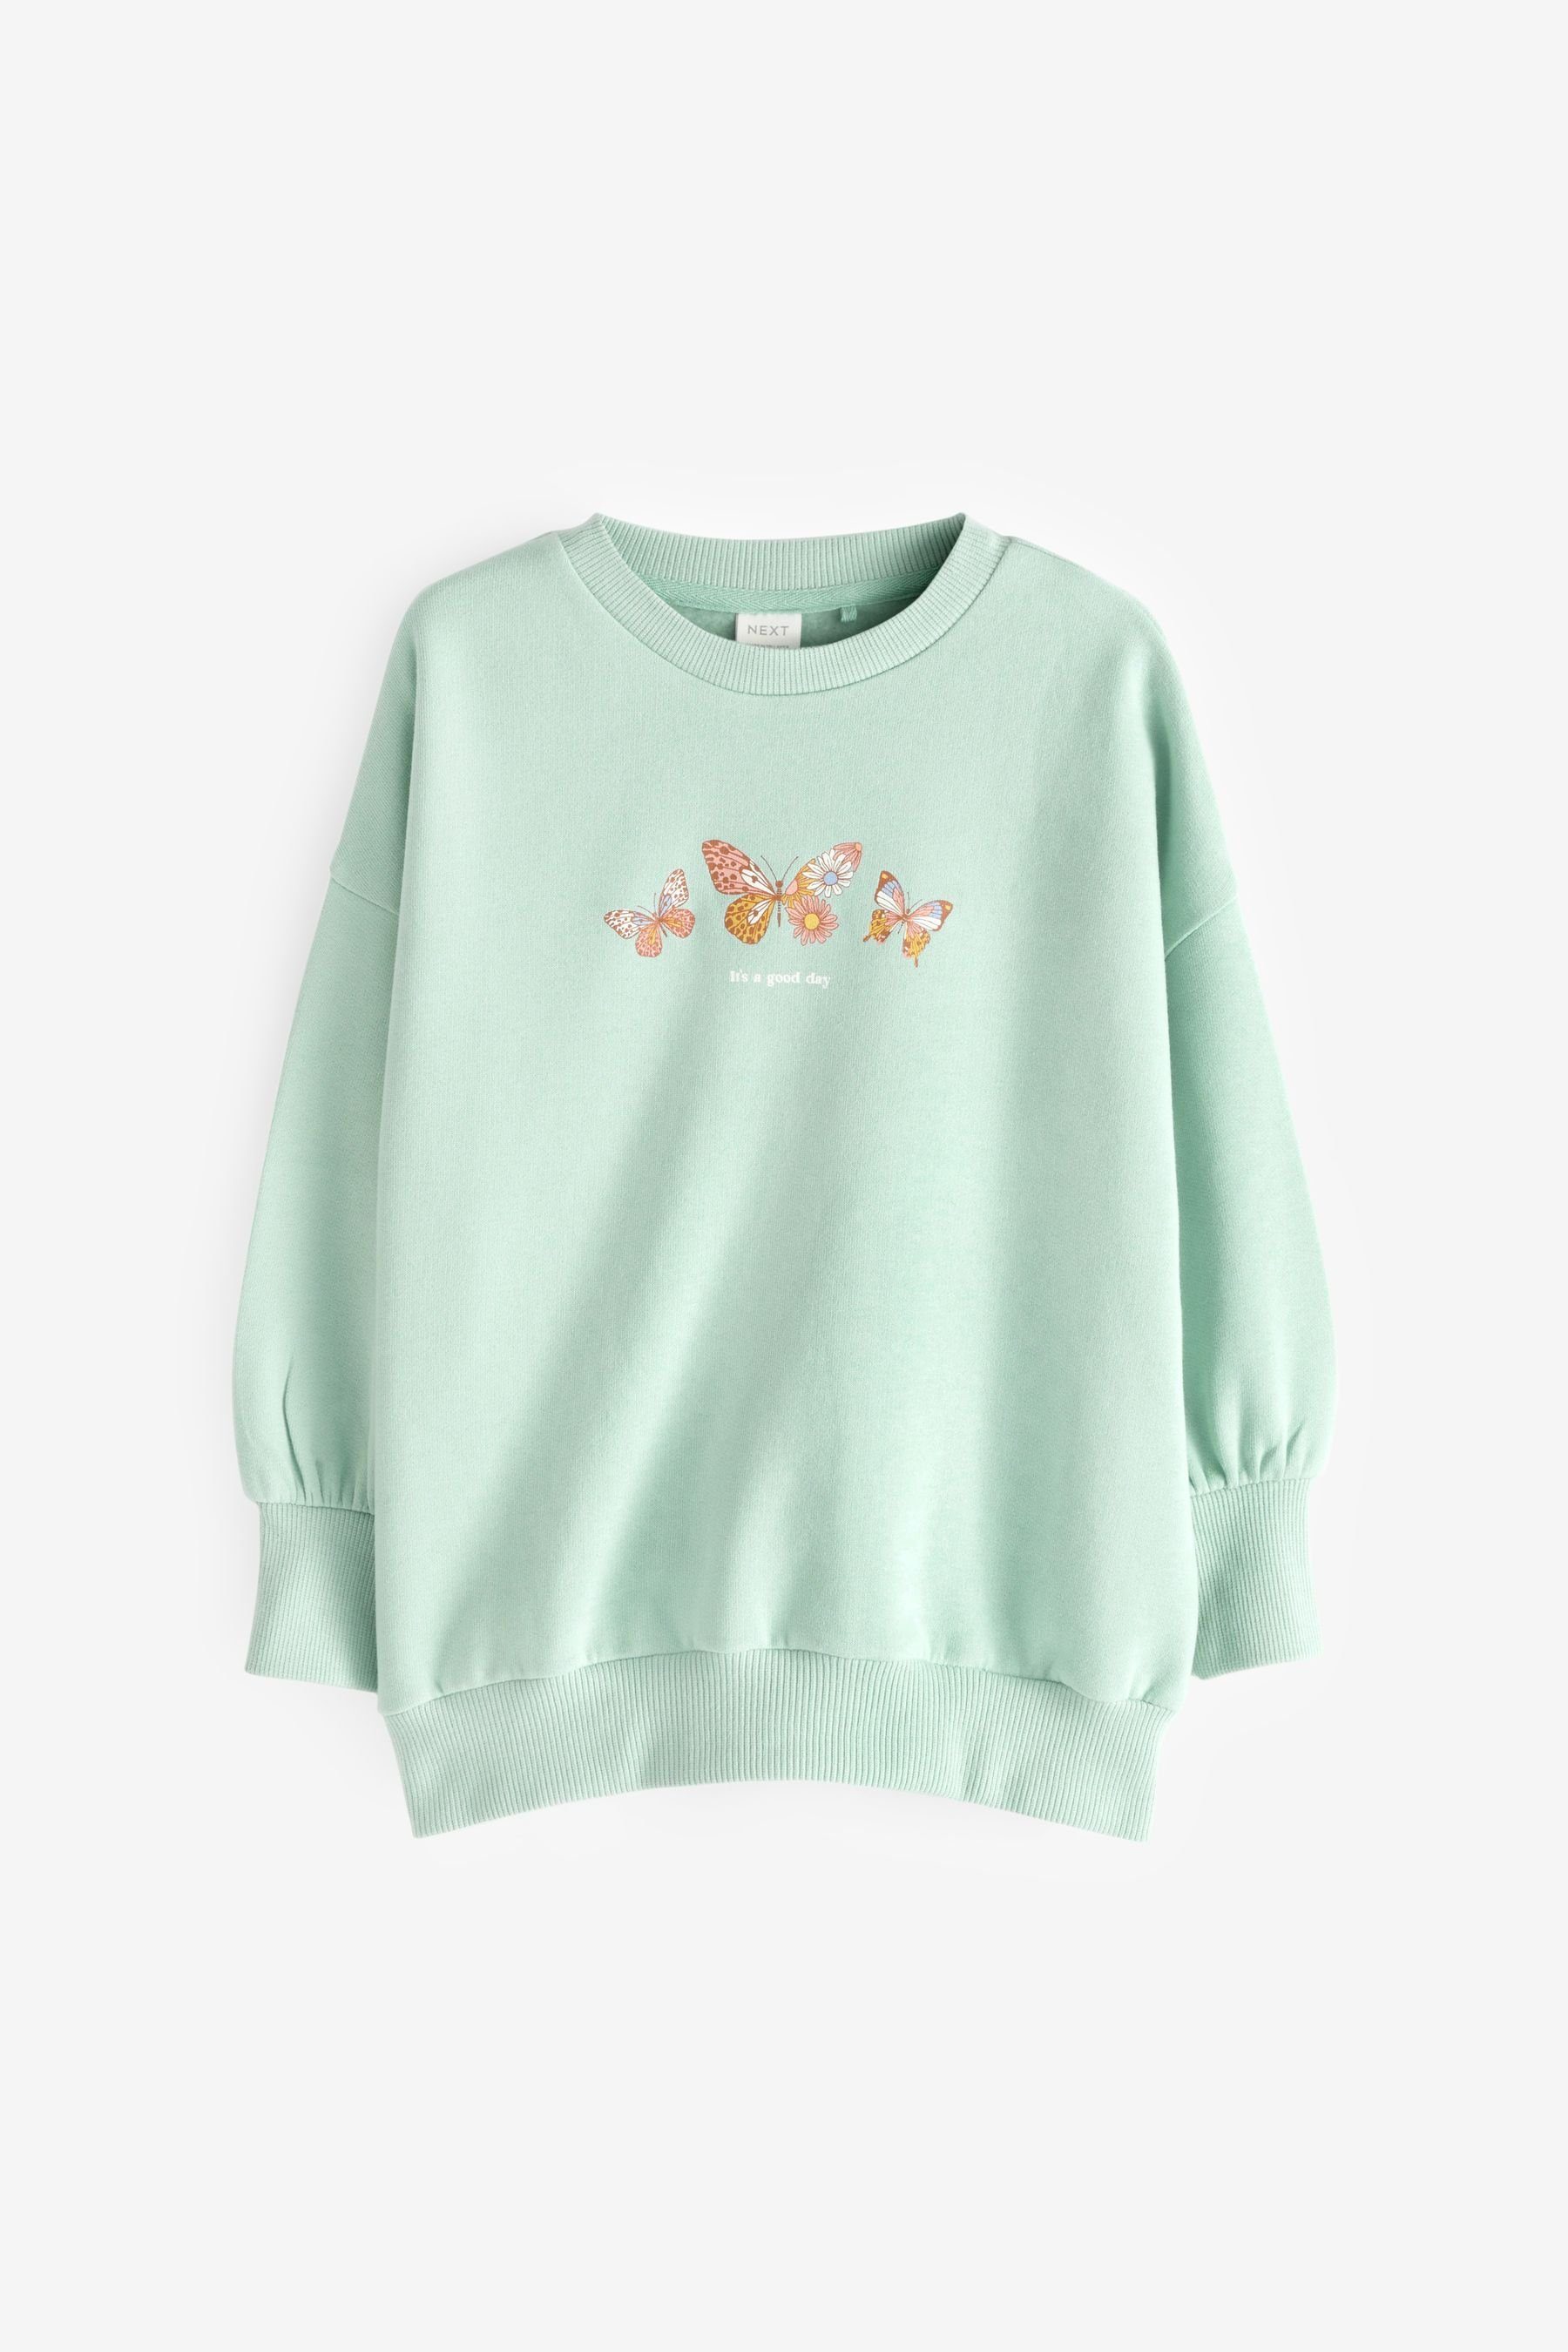 Next Sweatshirt Mint Oversized Green (1-tlg) Sweatshirt Schmetterling